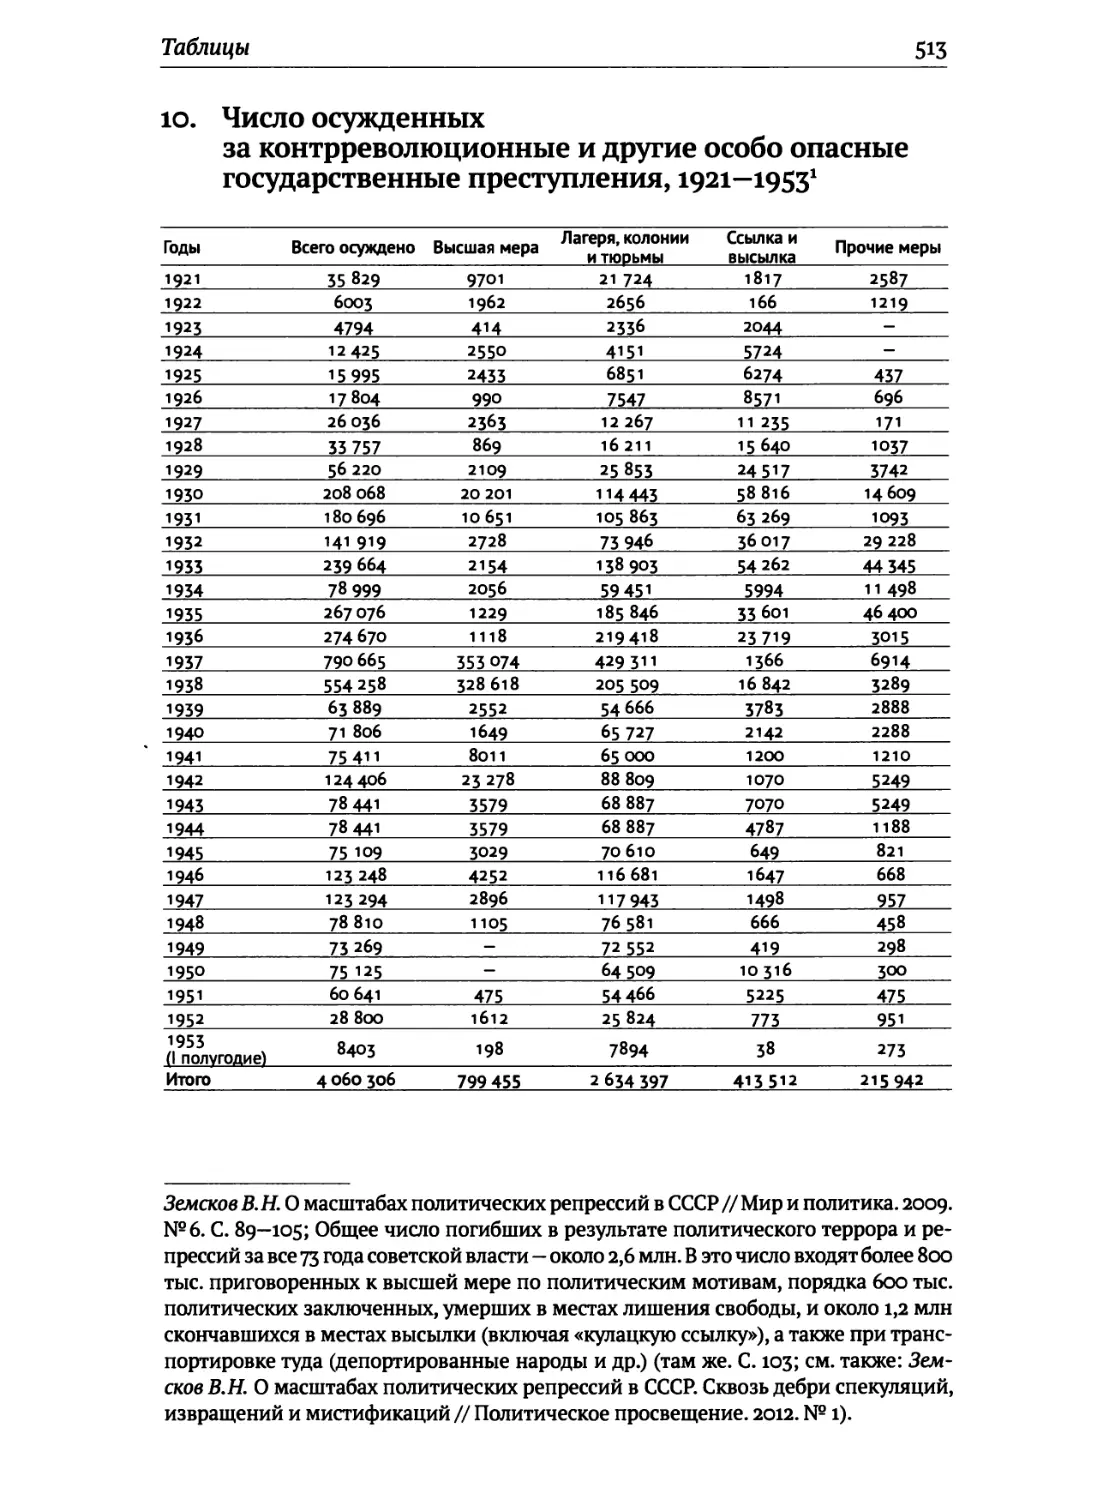 Число осужденных за контрреволюционные и др... преступления,1921—1953